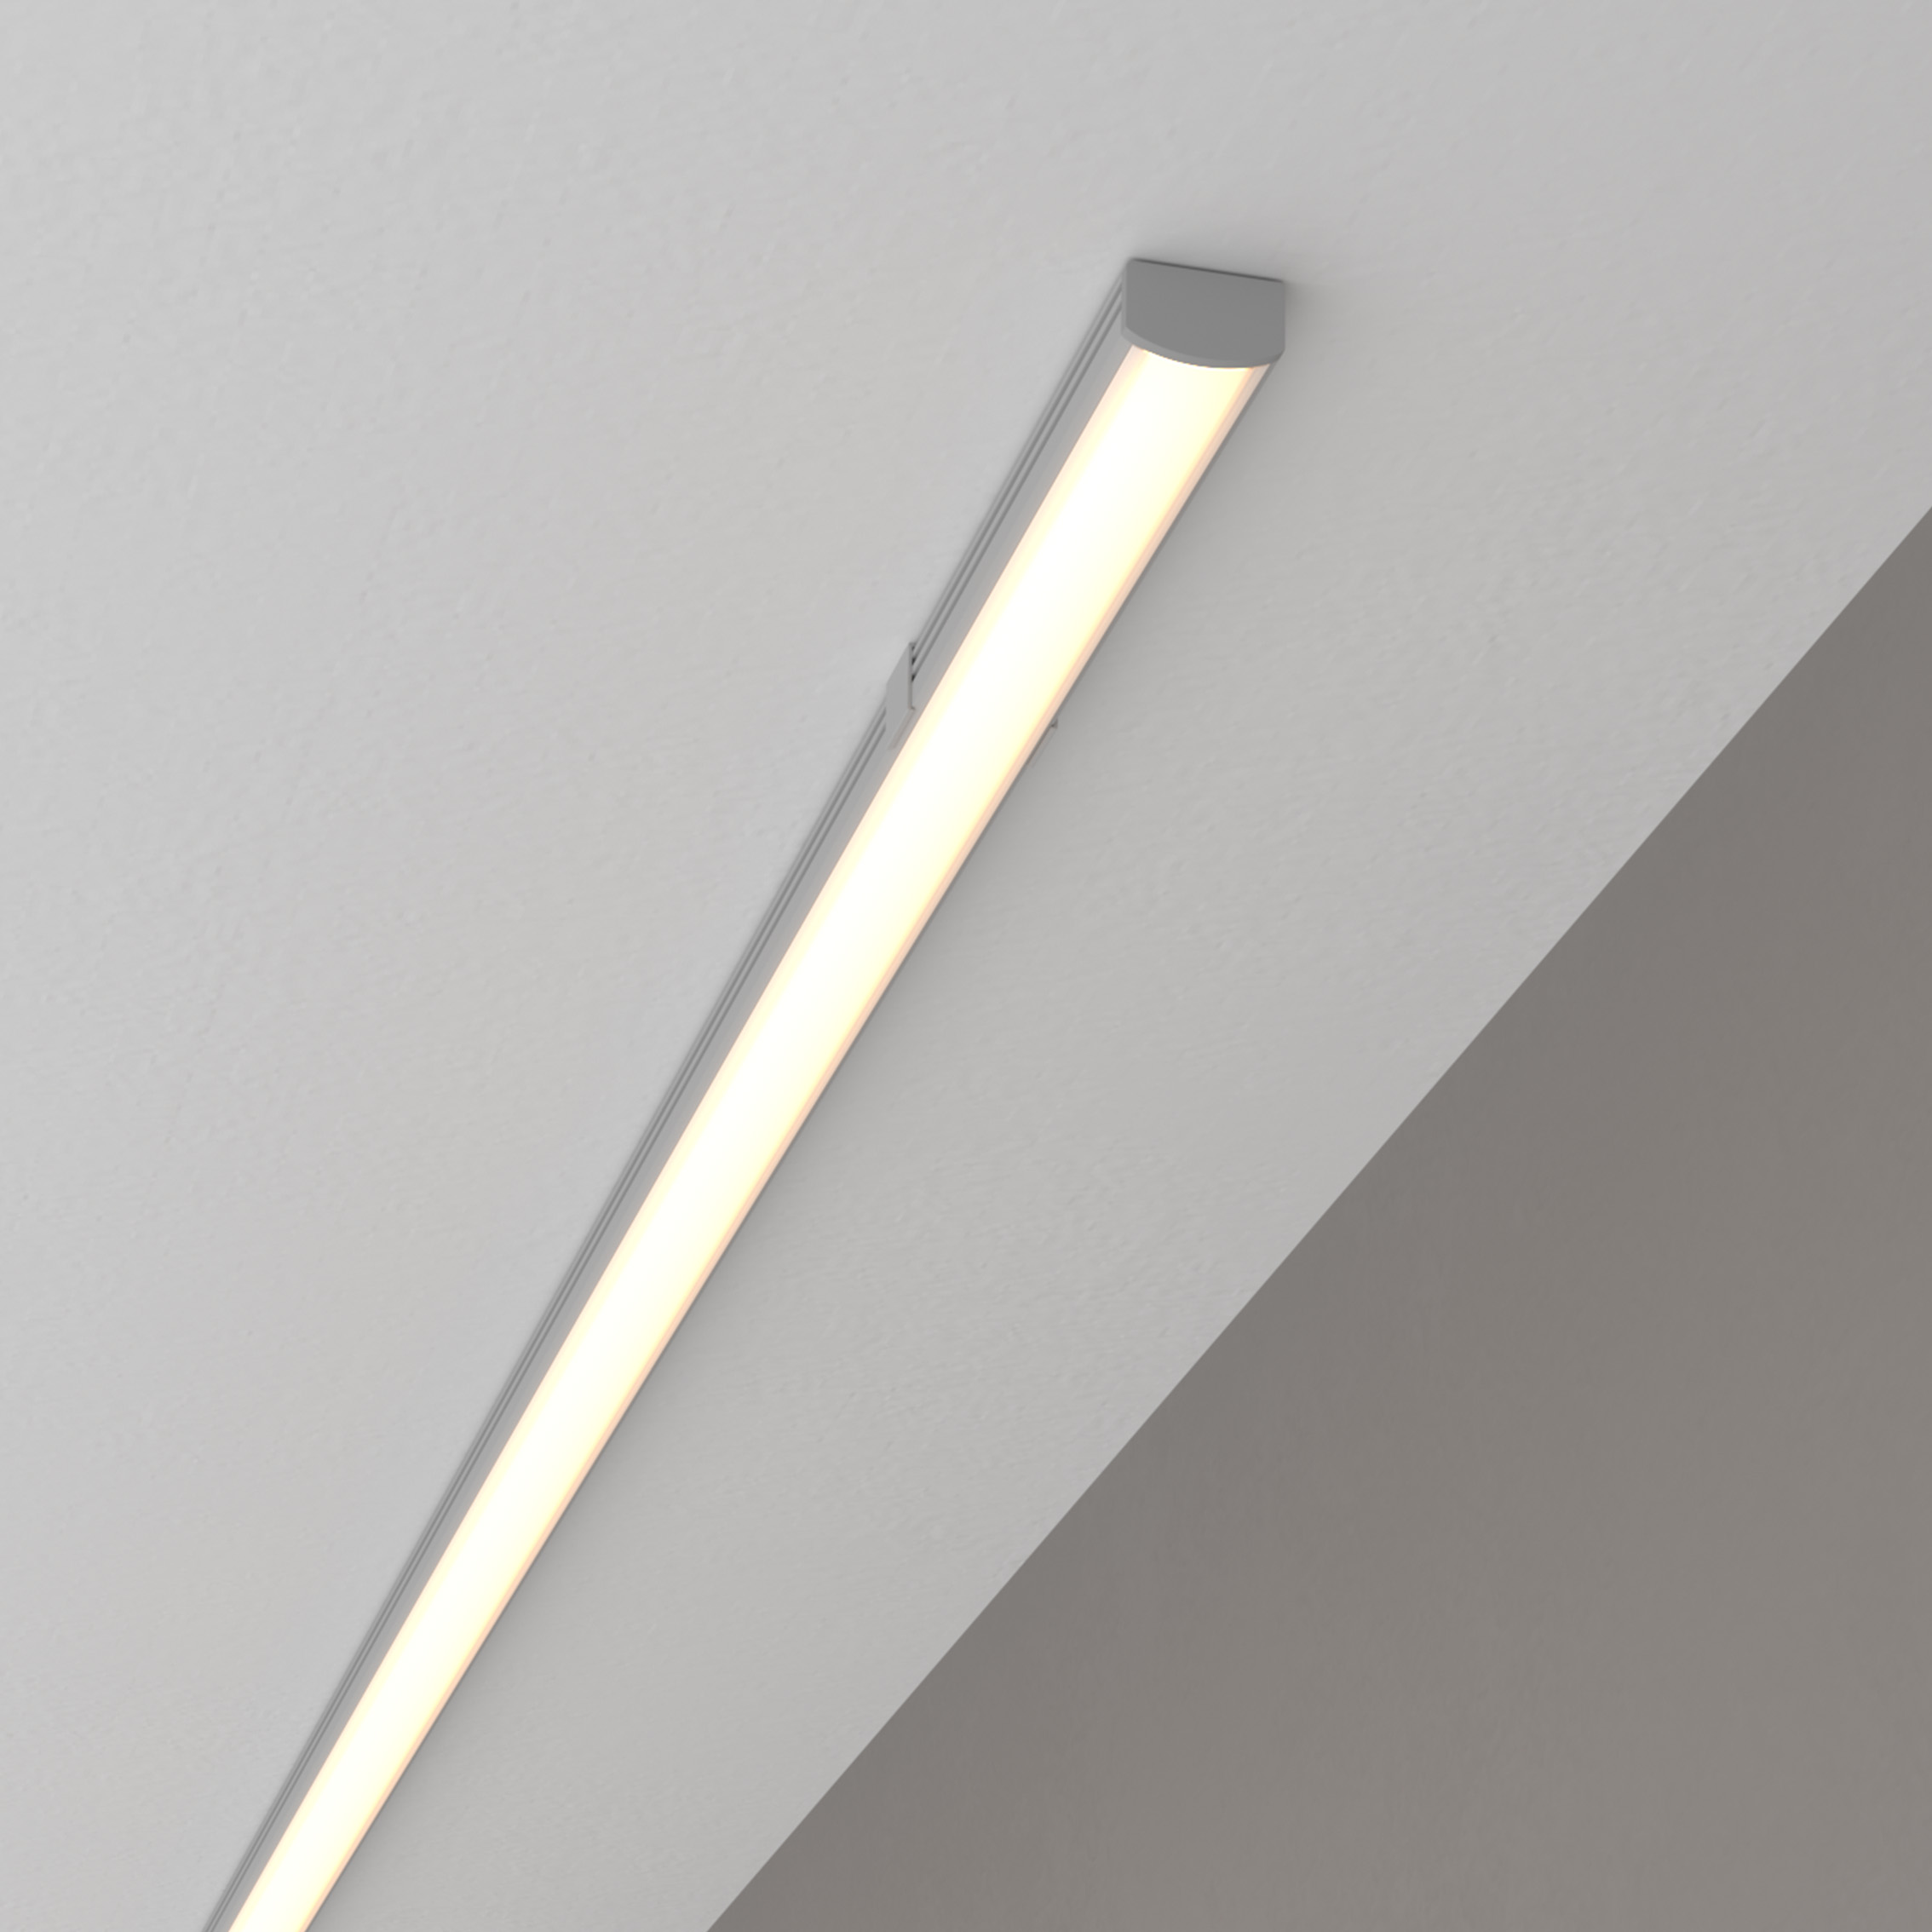 Küchen Unterbauleuchte LED kaufen günstig | Online warmweiß